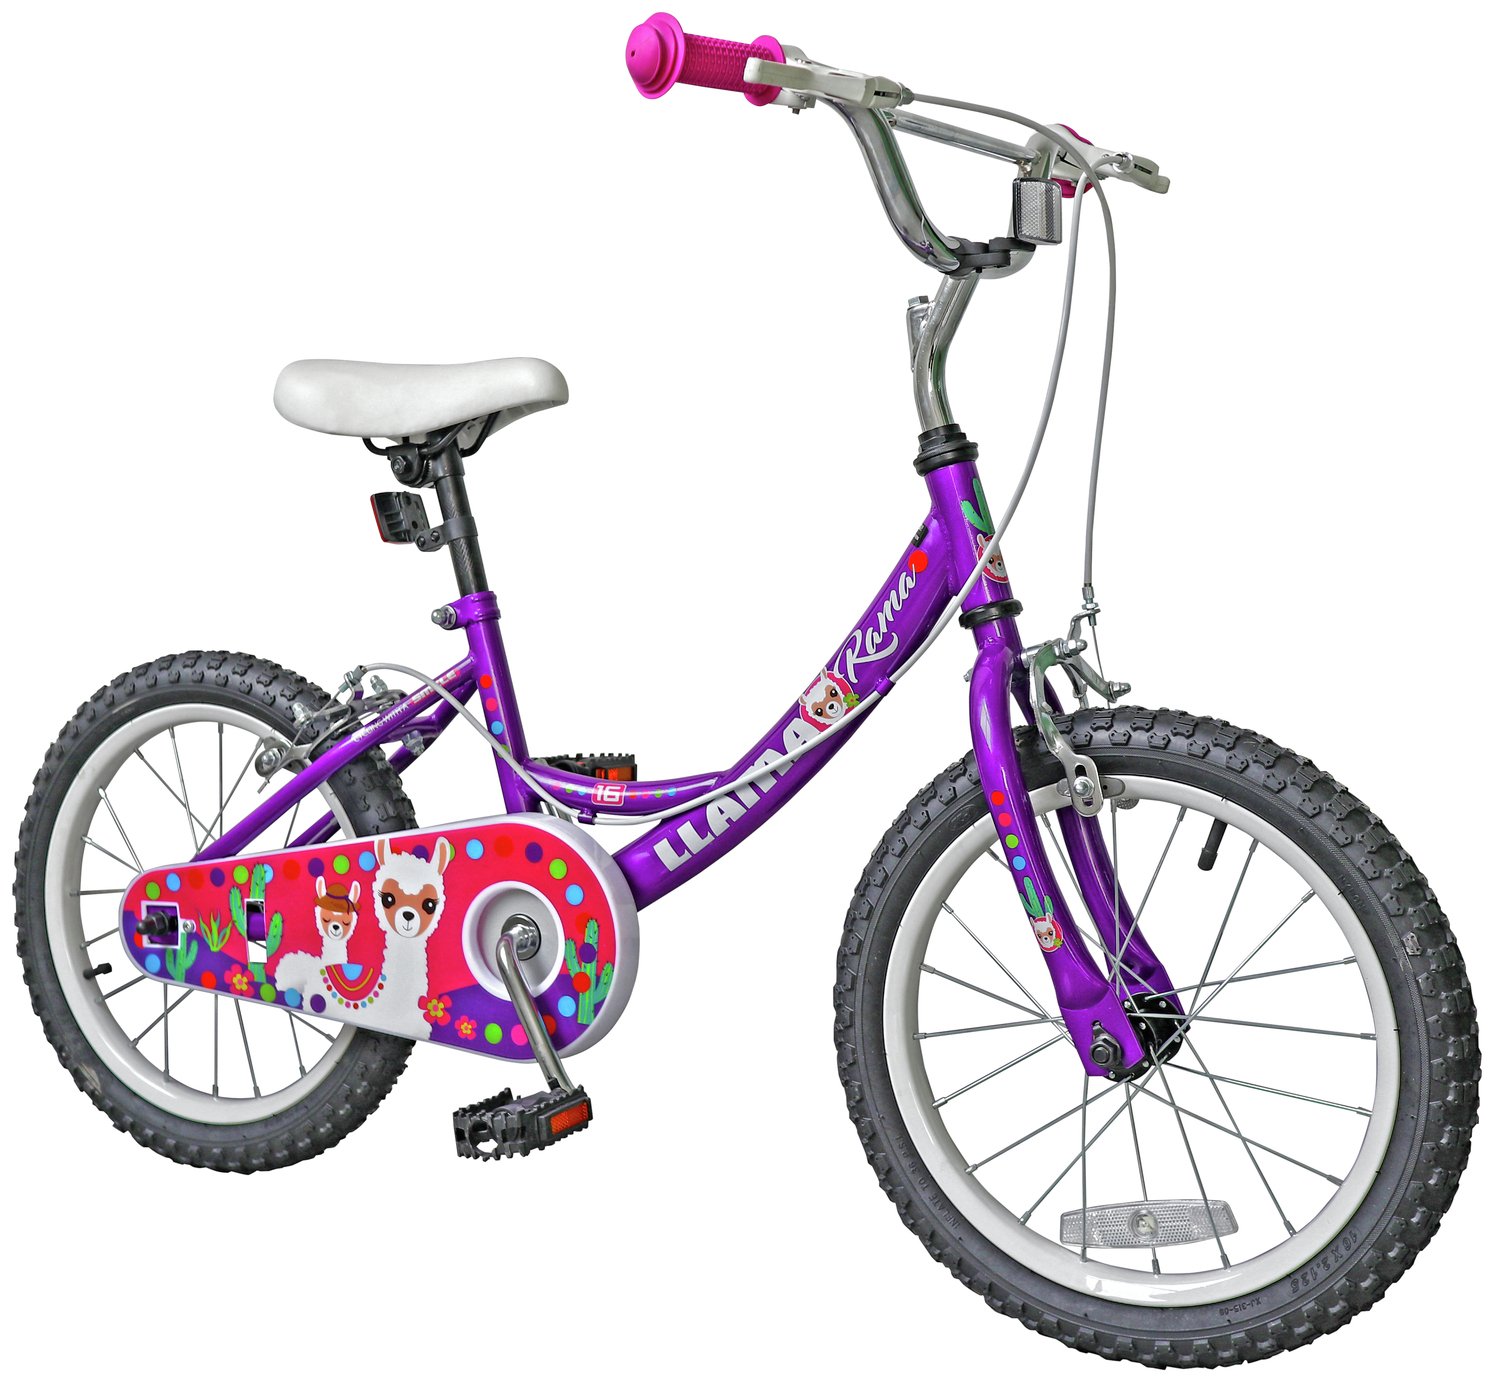 argos bicycle